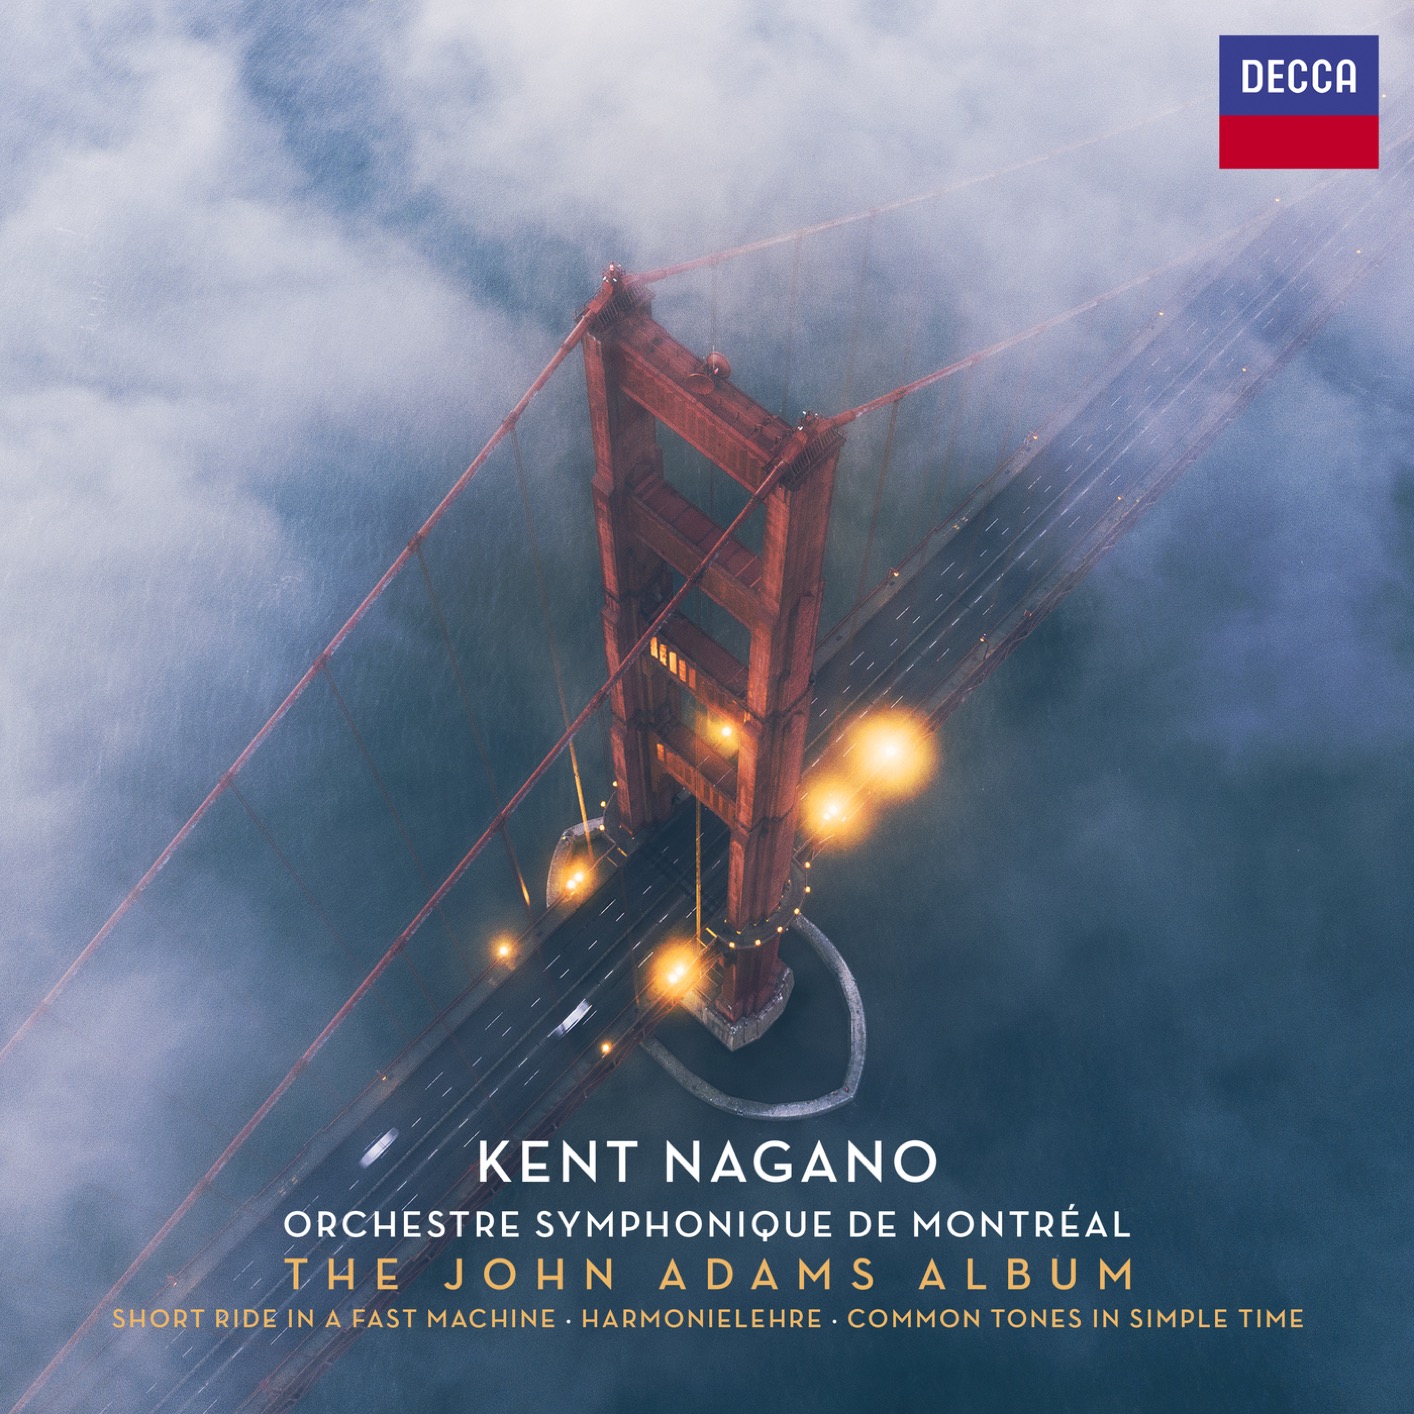 Orchestre Symphonique de Montreal & Kent Nagano - The John Adams Album (2019) [FLAC 24bit/96kHz]